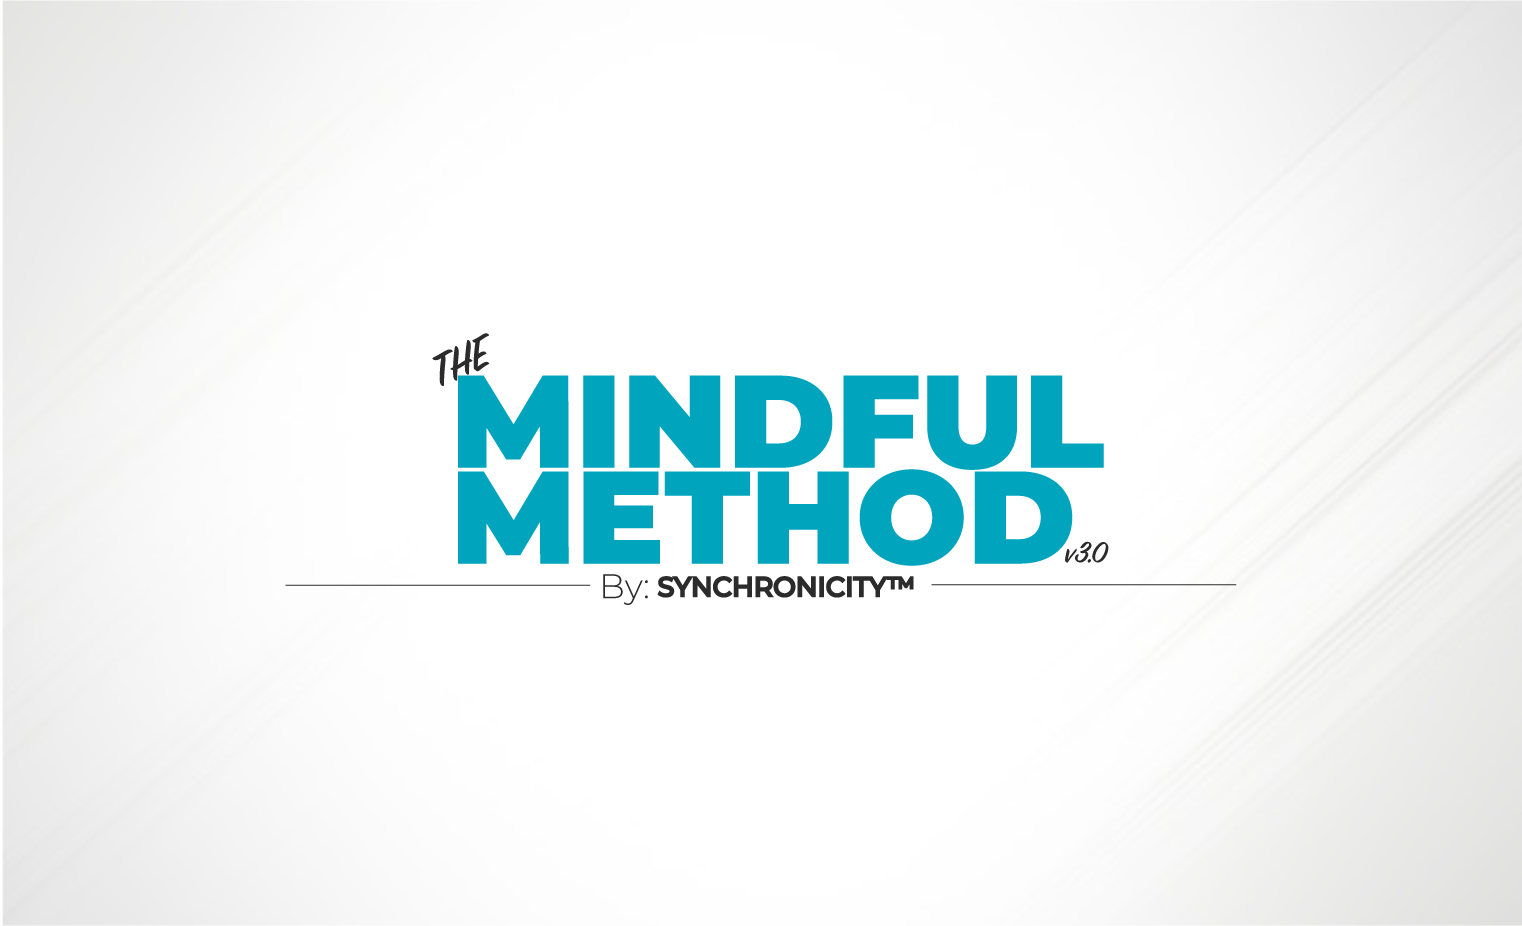 The Mindful Method